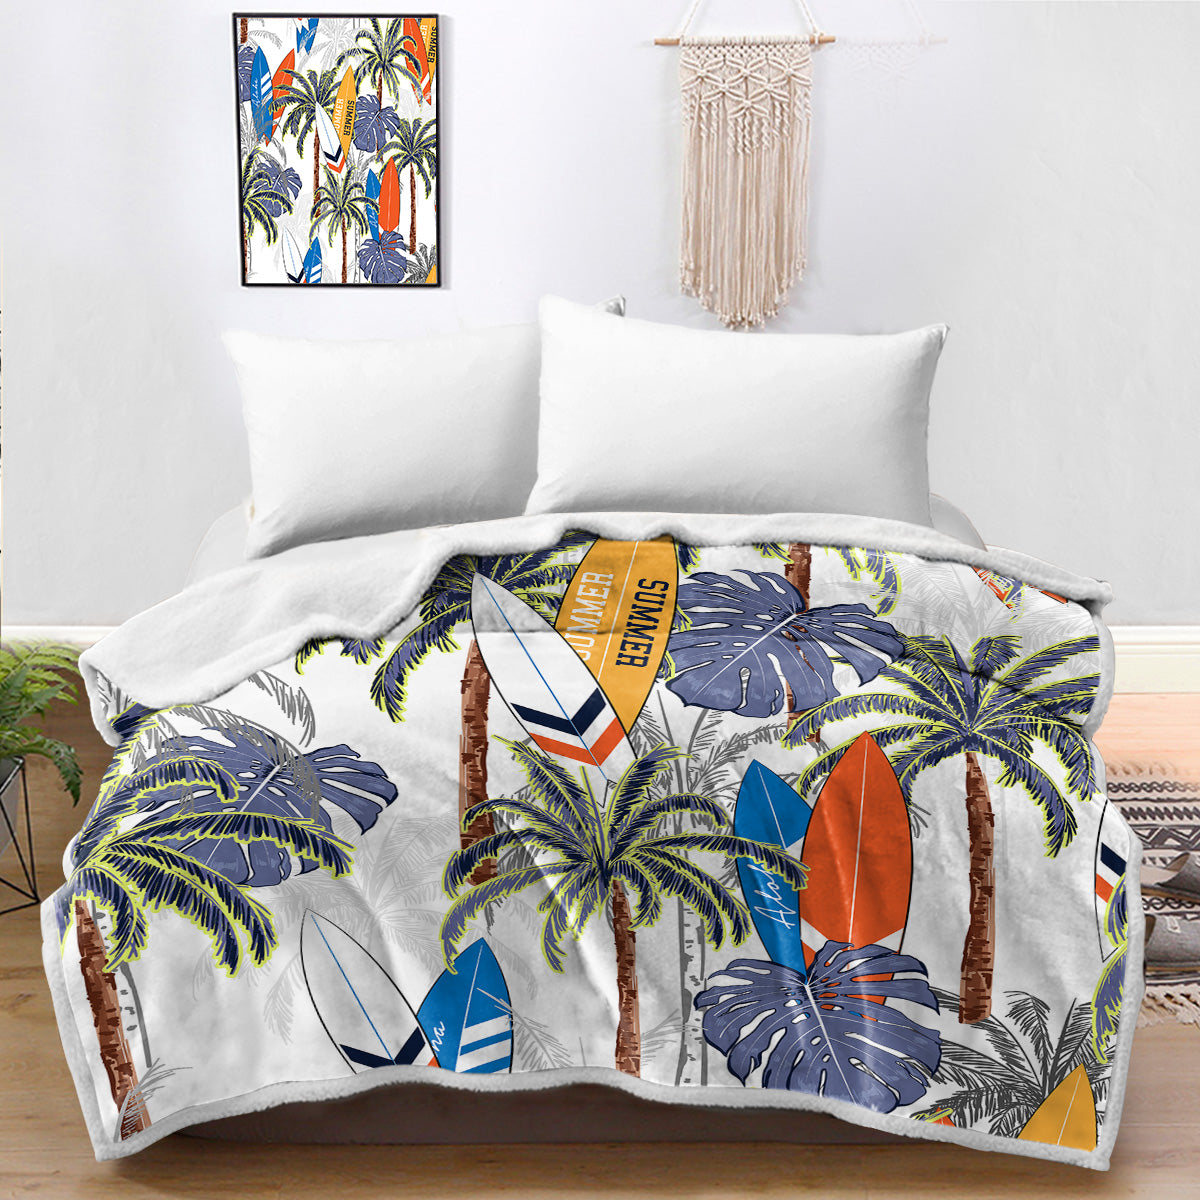 Tropical Surfer Bedspread Blanket